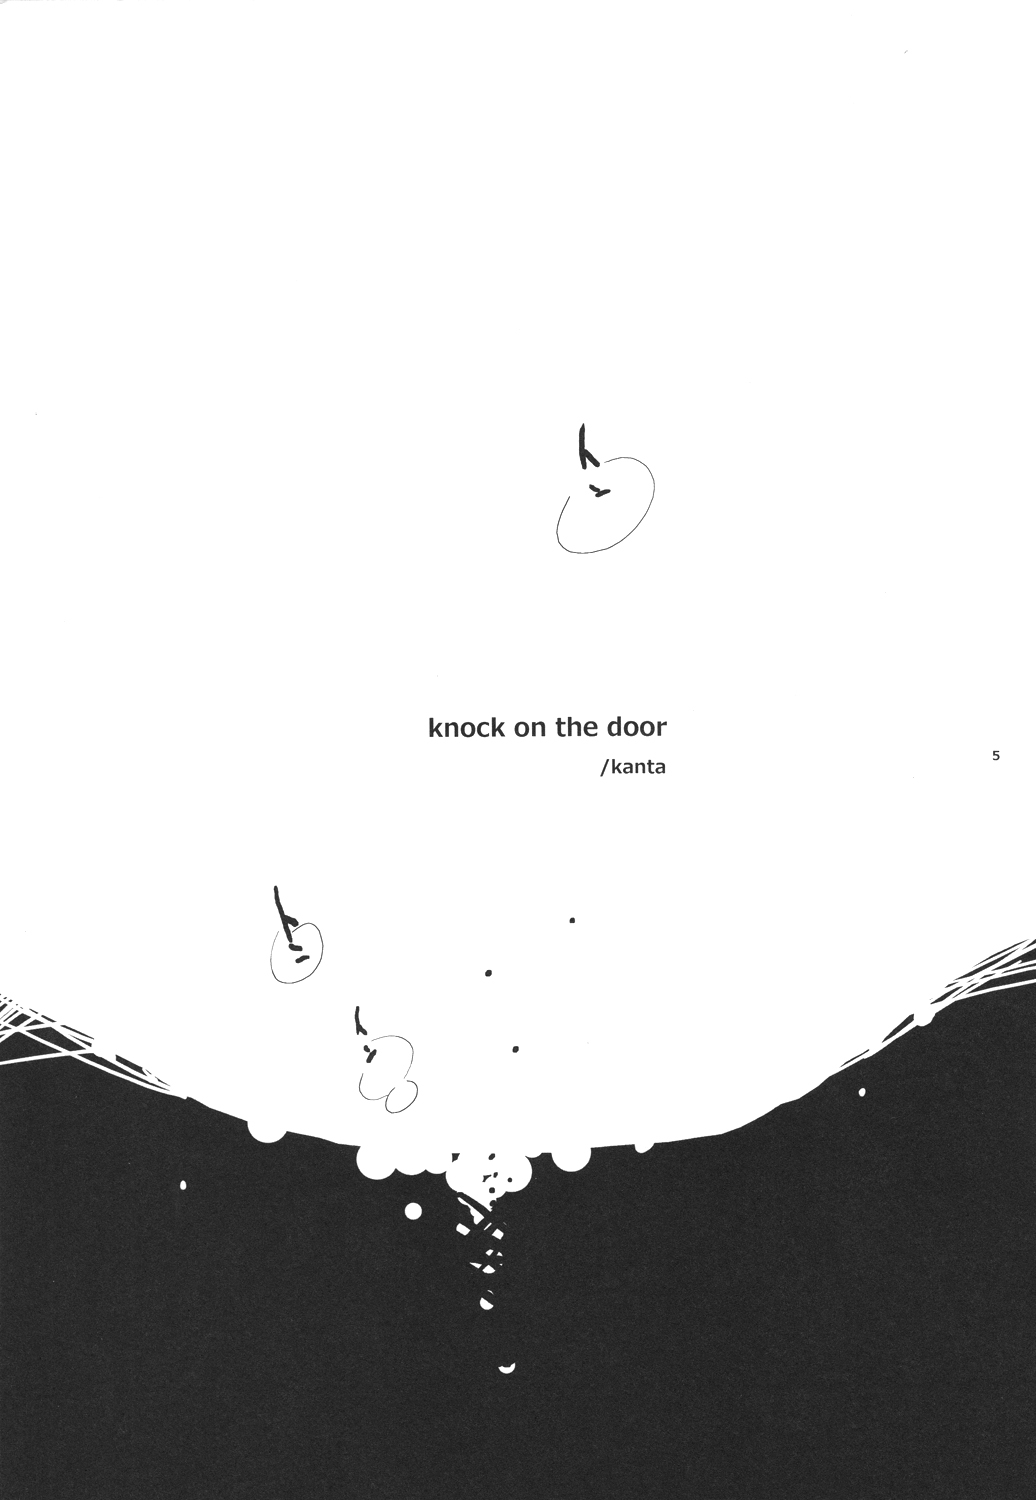 (HaruCC19) [hBa (Kanta)] knock on the door (Gintama) (HARUCC19) [hBa (kanta)] knock on the door (銀魂)